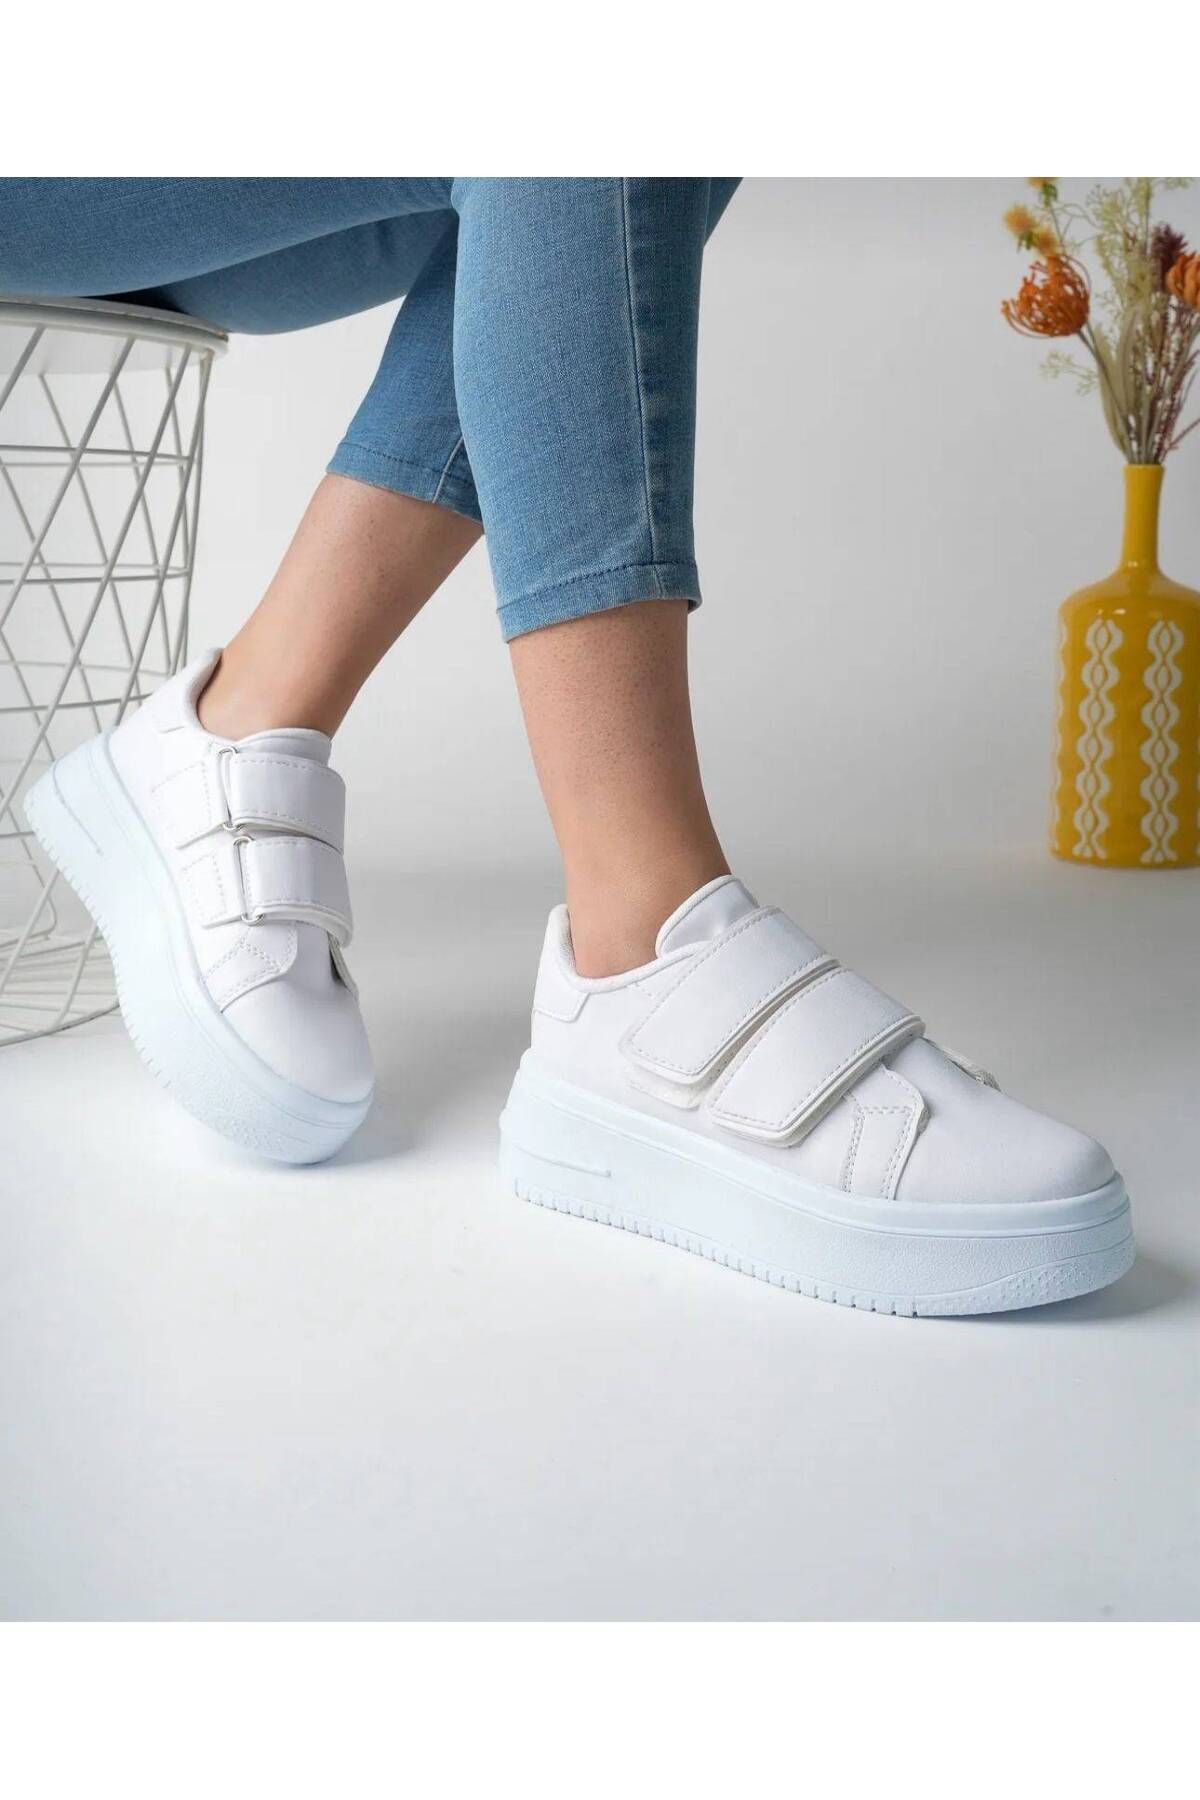 ayakkabıhavuzu Beyaz Yüksek Tabanlı Cırt Bantlı Sneaker